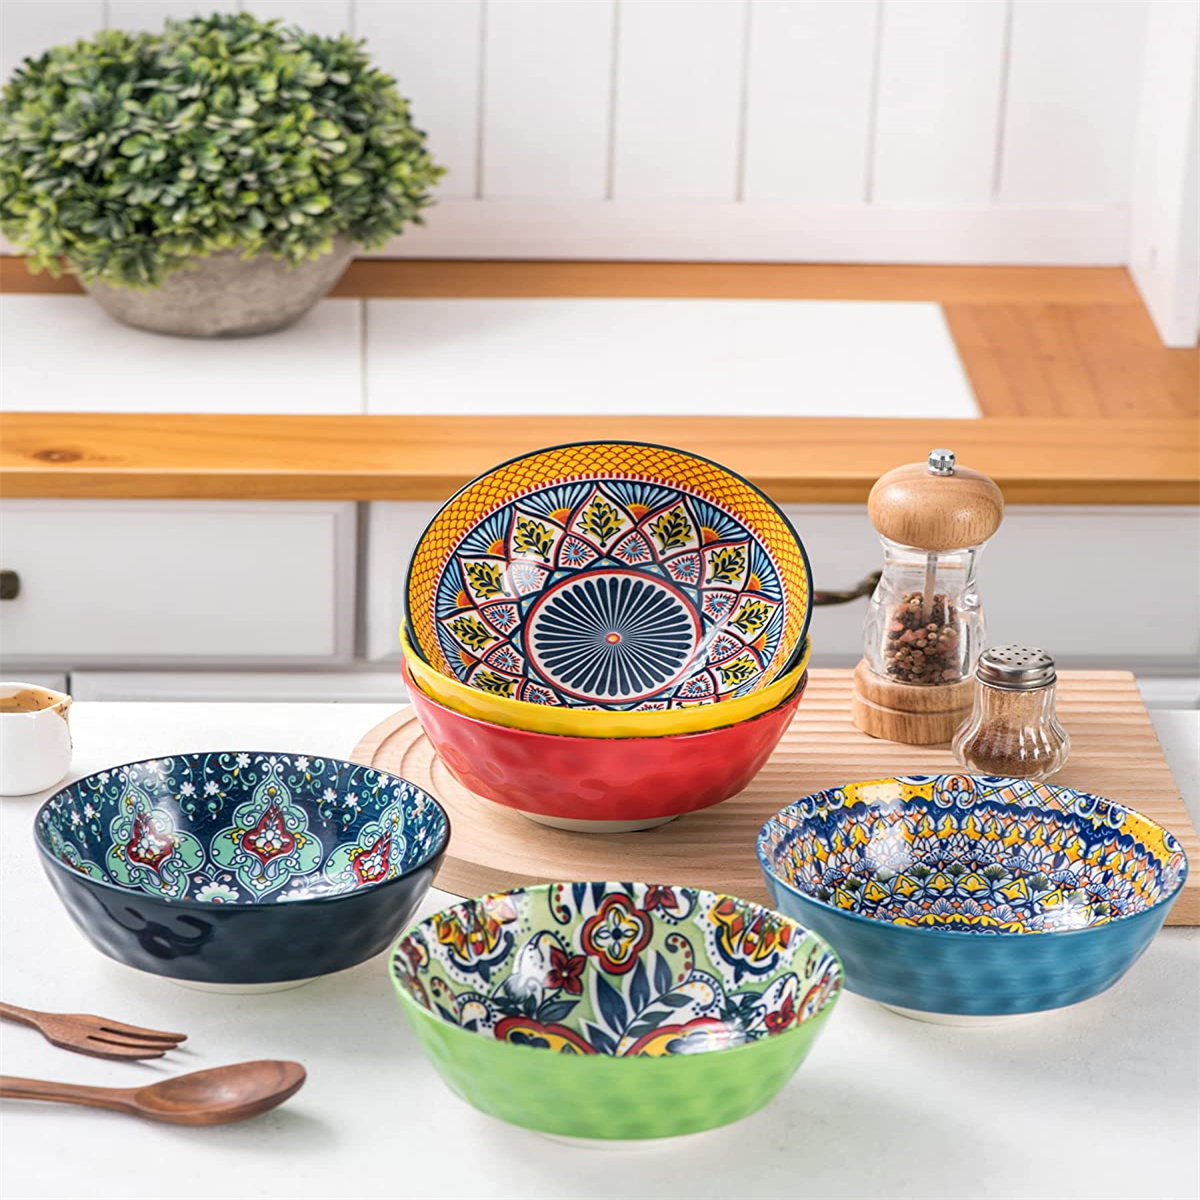 https://assets.wfcdn.com/im/20555717/compr-r85/2488/248898518/ceramic-cereal-soup-bowls-set-of-6-25-oz-deep-colorful-porcelain-serving-bowls-for-dinner-pasta-salad-oatmeal-bohemian-style.jpg